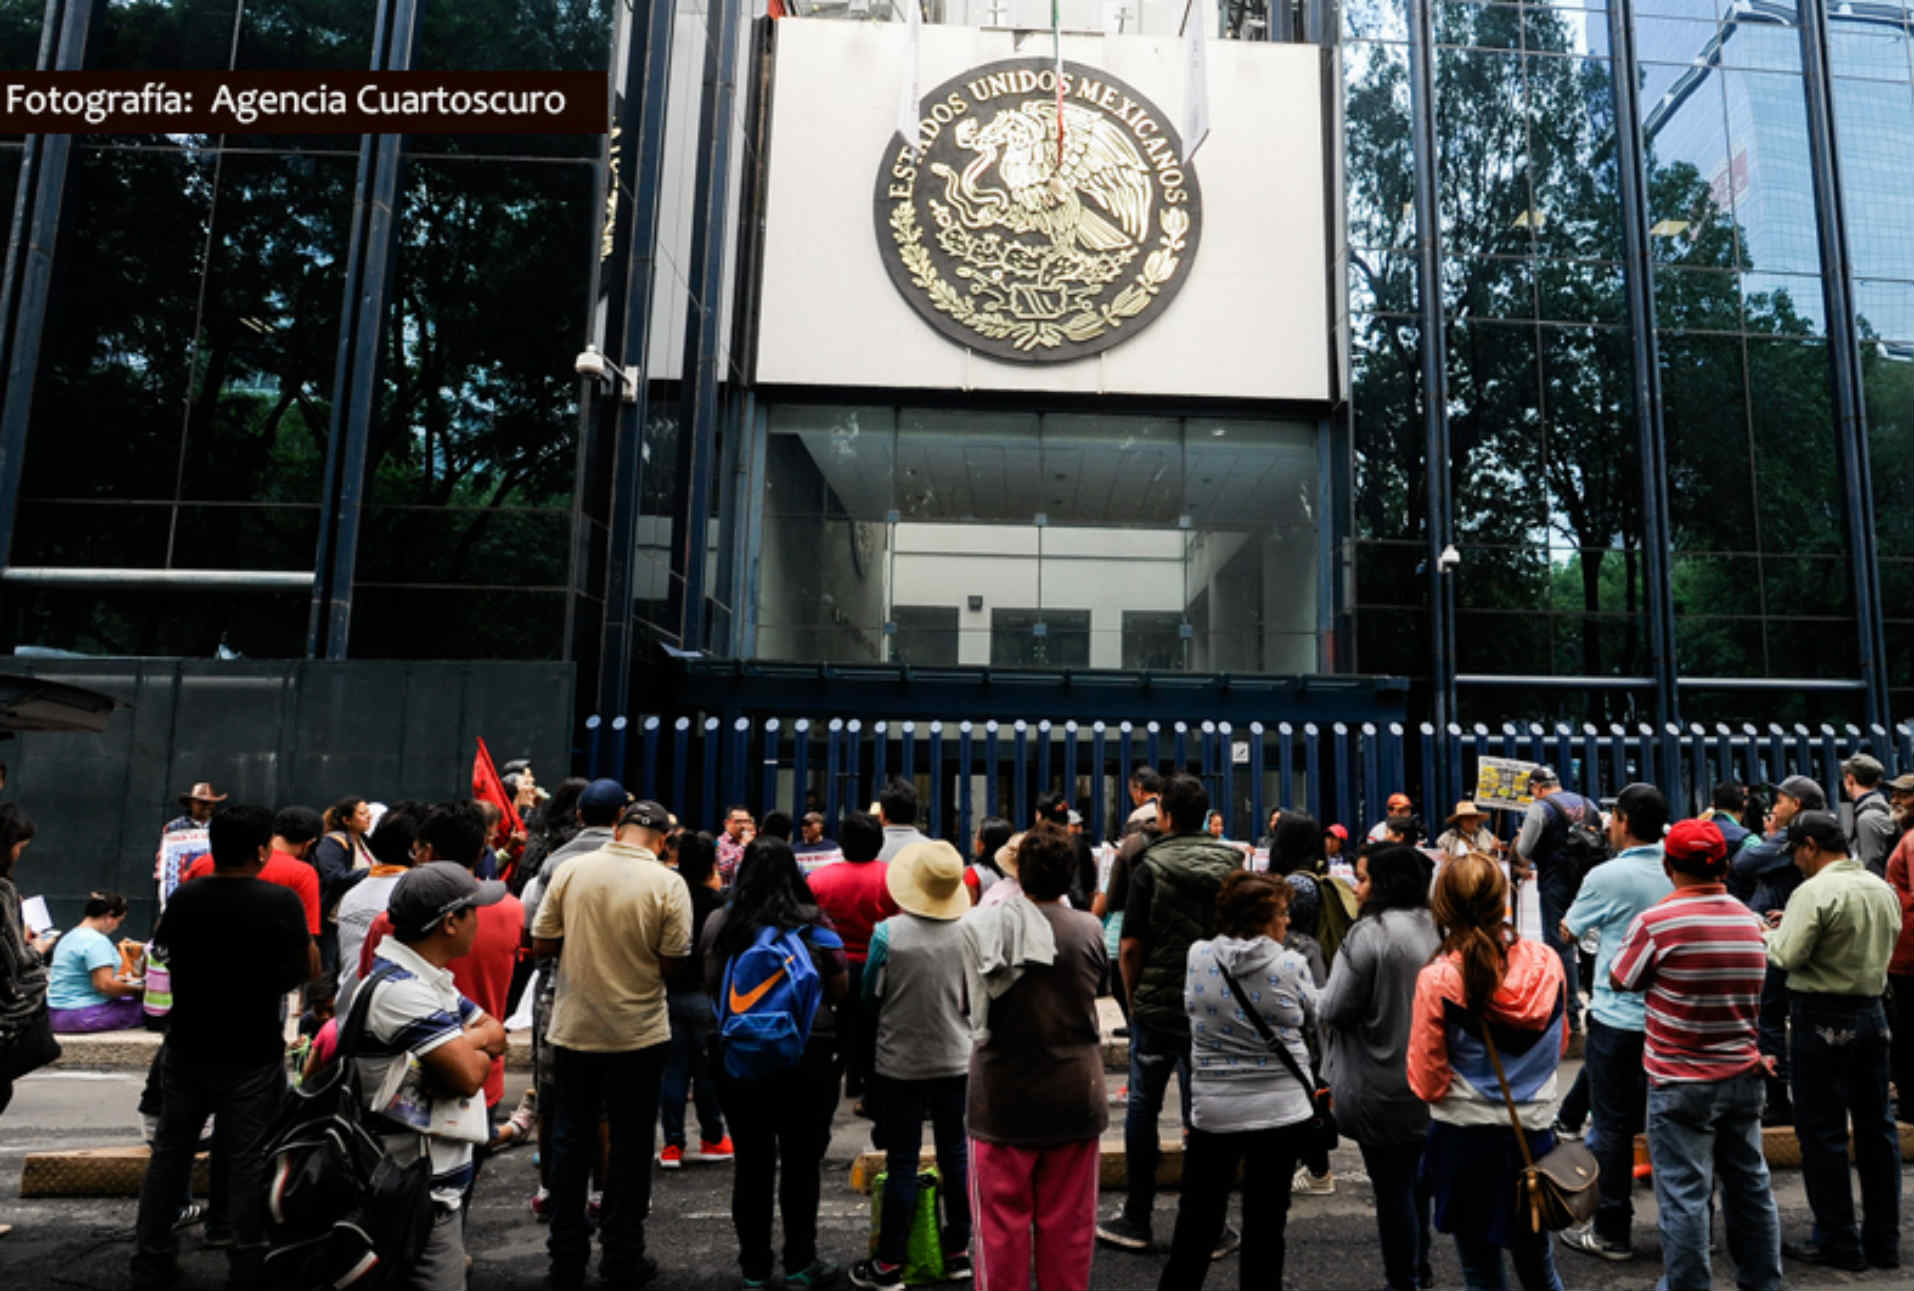 Los valets | Denise Dresser en Reforma